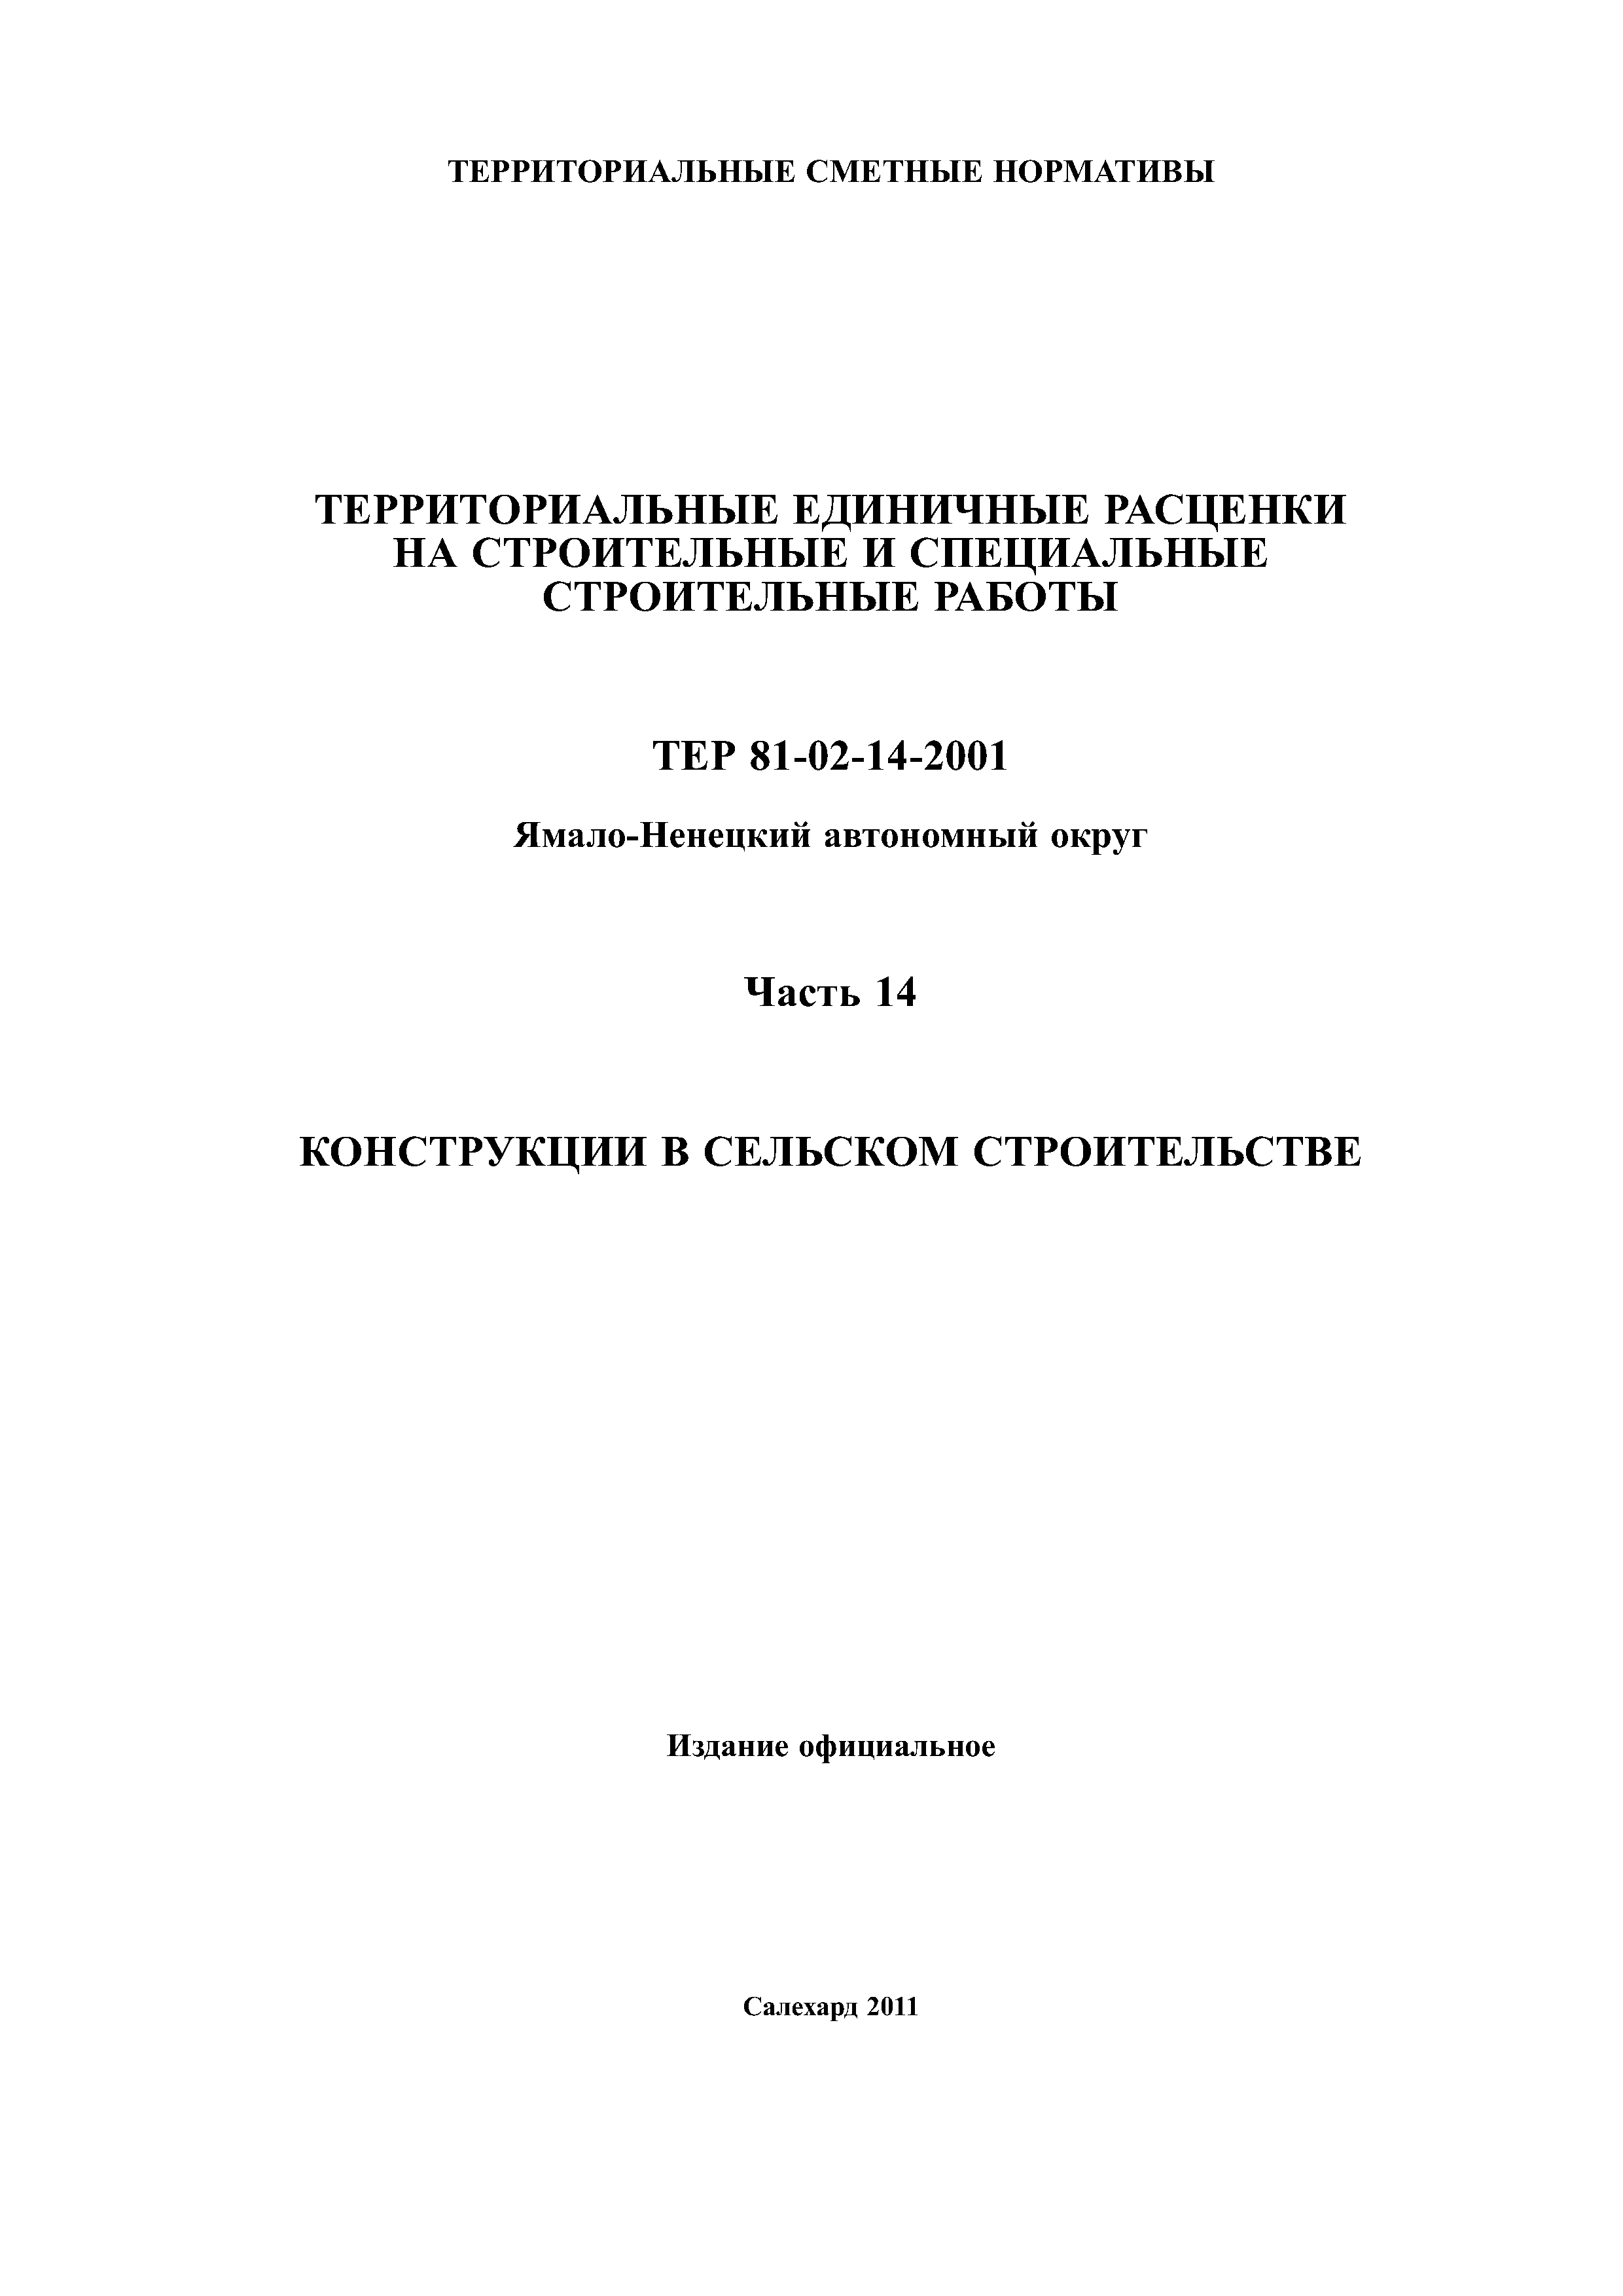 ТЕР Ямало-Ненецкий автономный округ 14-2001